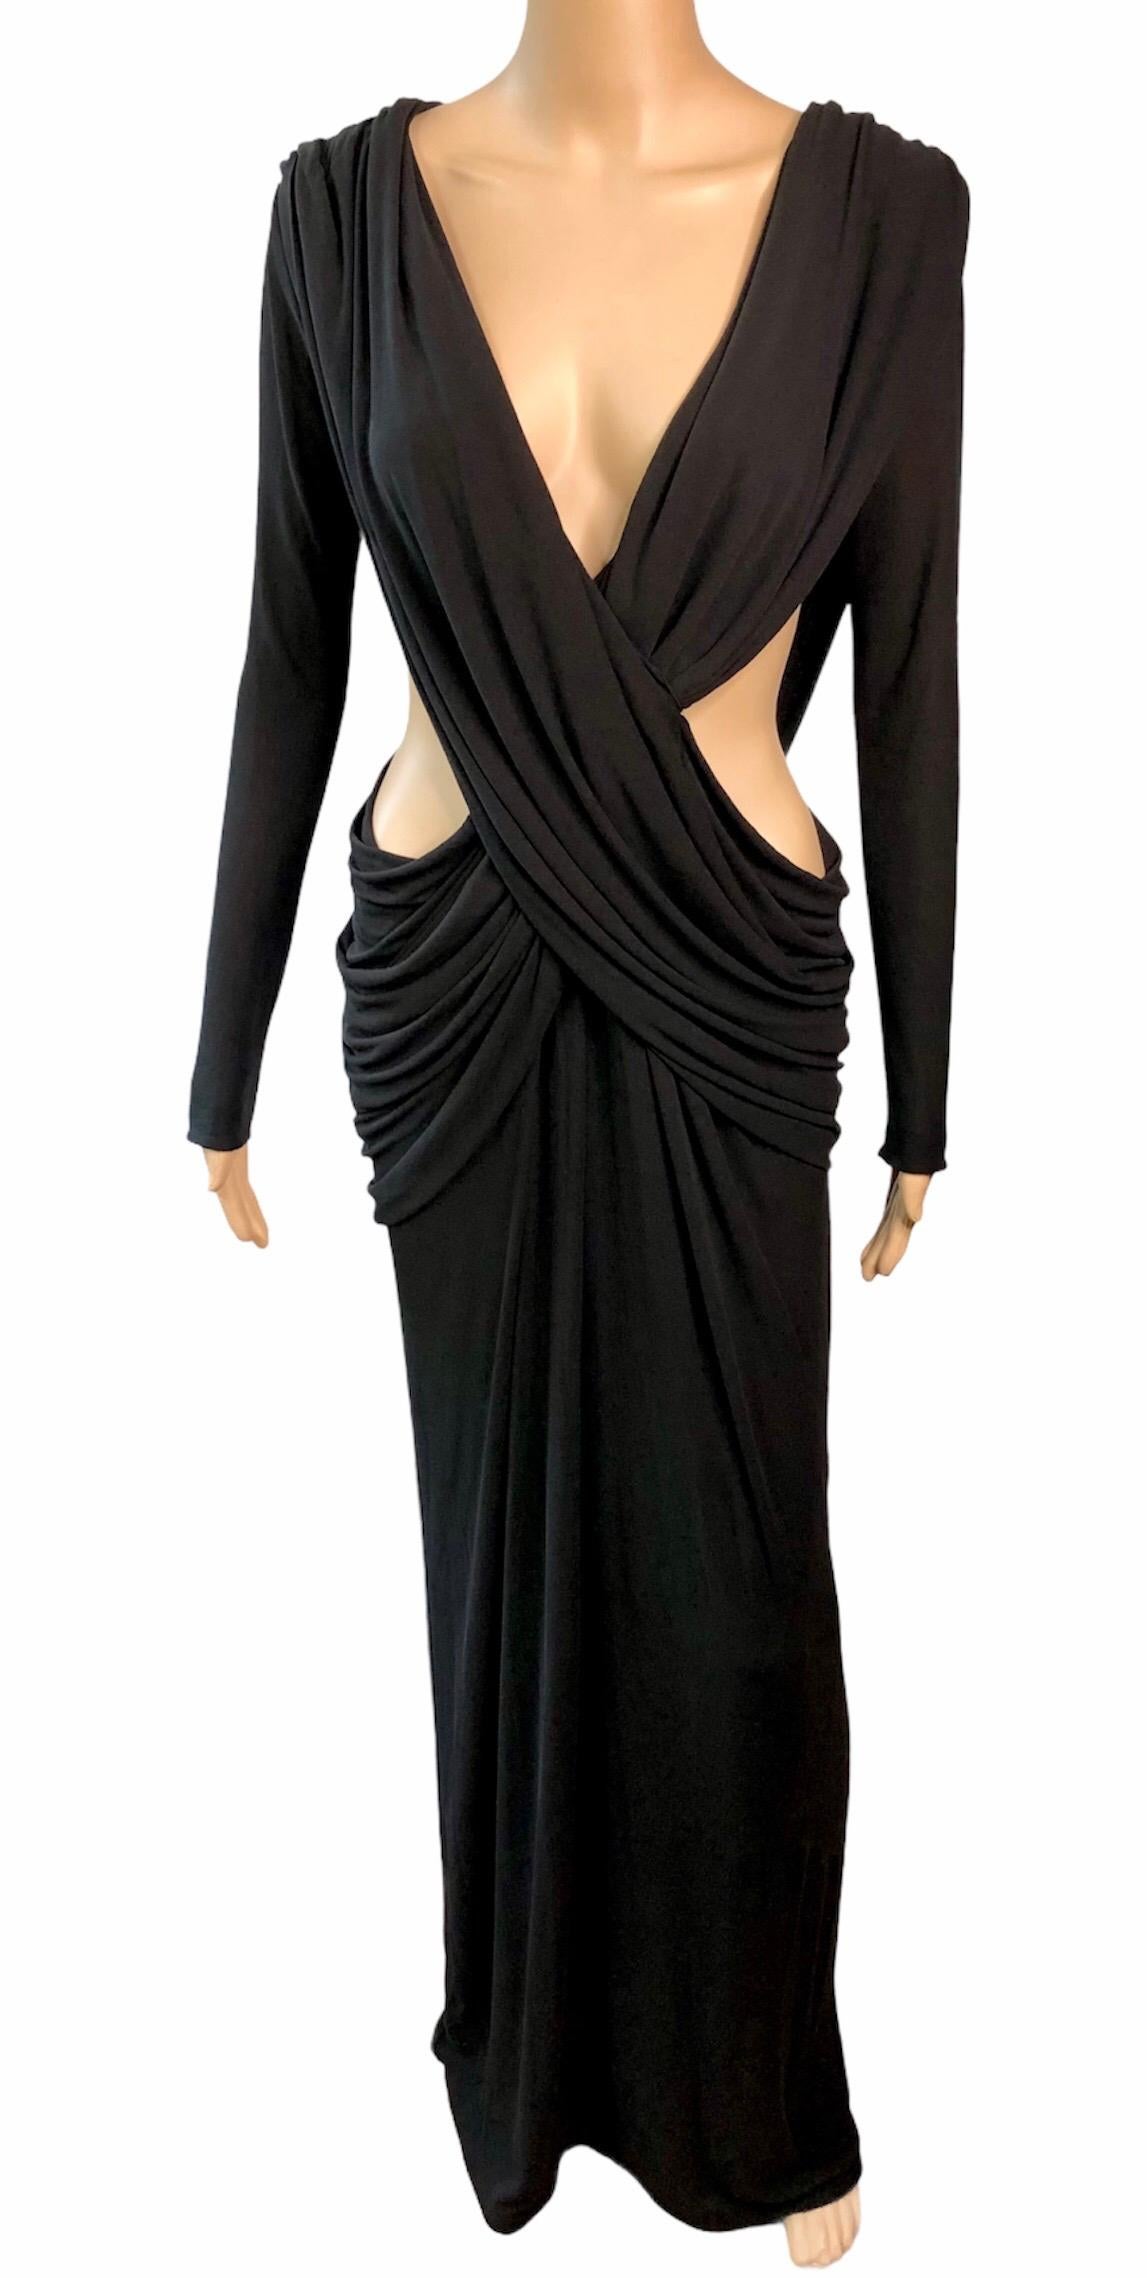 Yves Saint Laurent Rive Gauche YSL c.2006 Unworn Plunging Cutout Black Evening Dress Gown Size S


